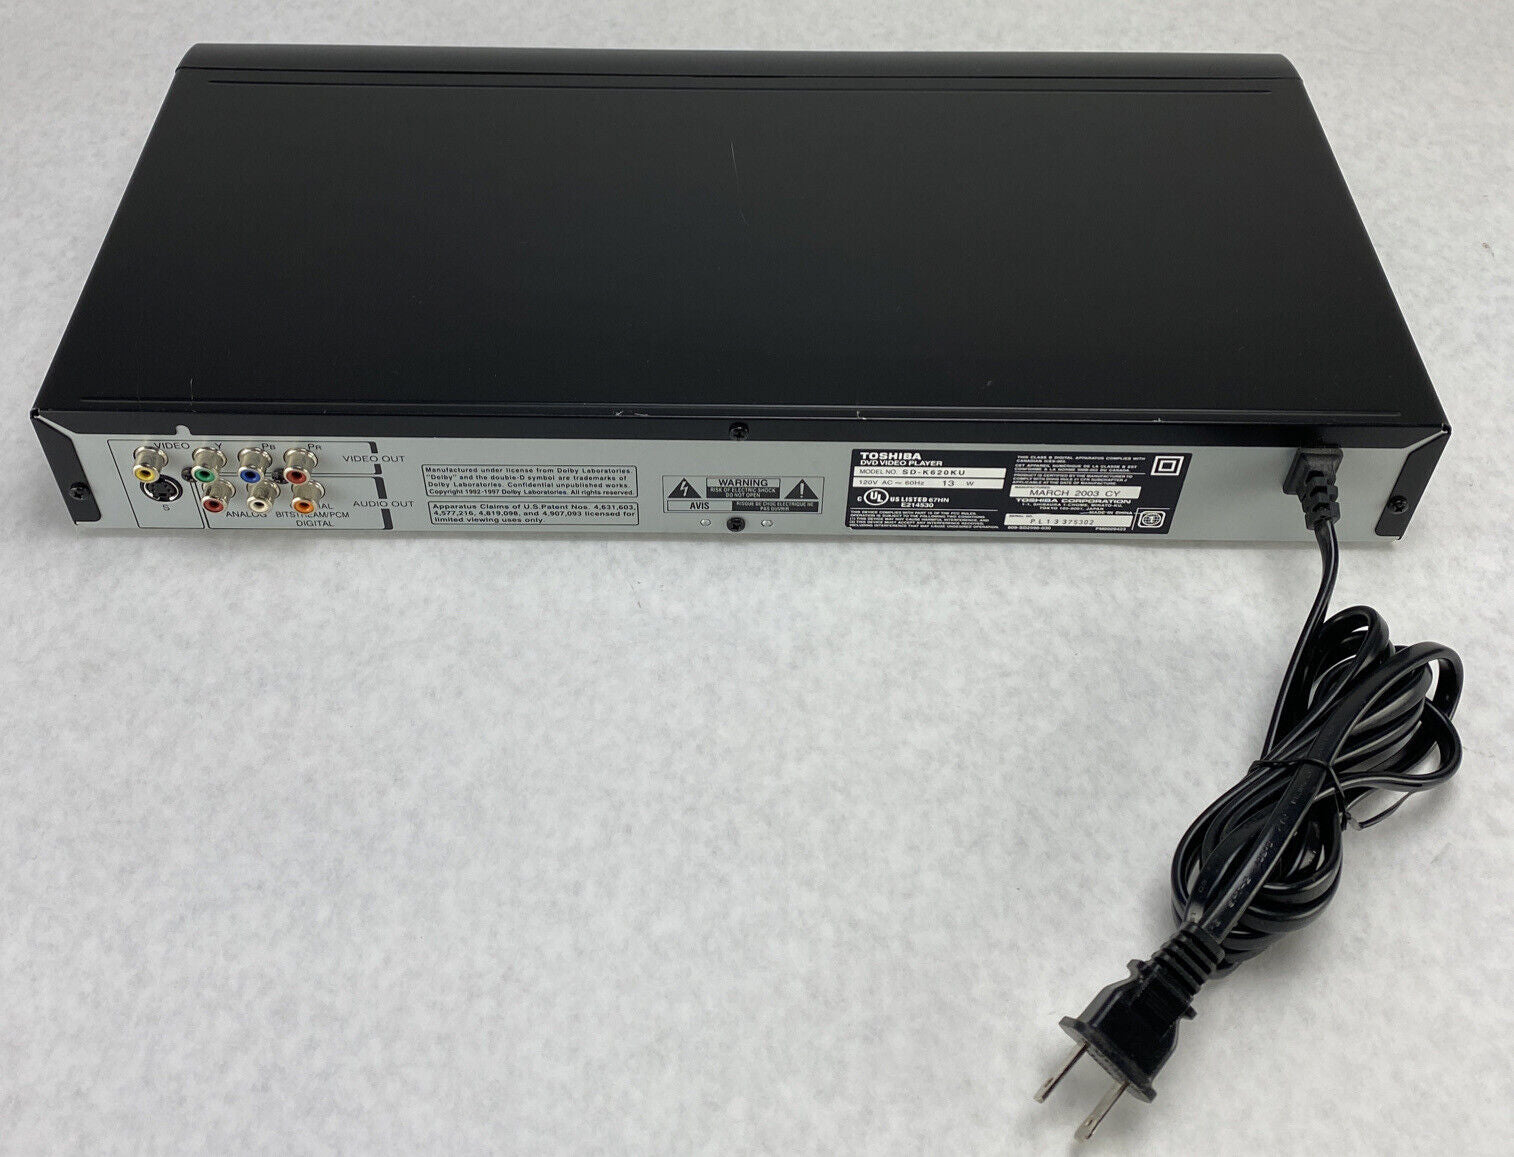 Toshiba SD-K620KU DVD Player Black Dolby Digital Color Stream w/ Remote TESTED